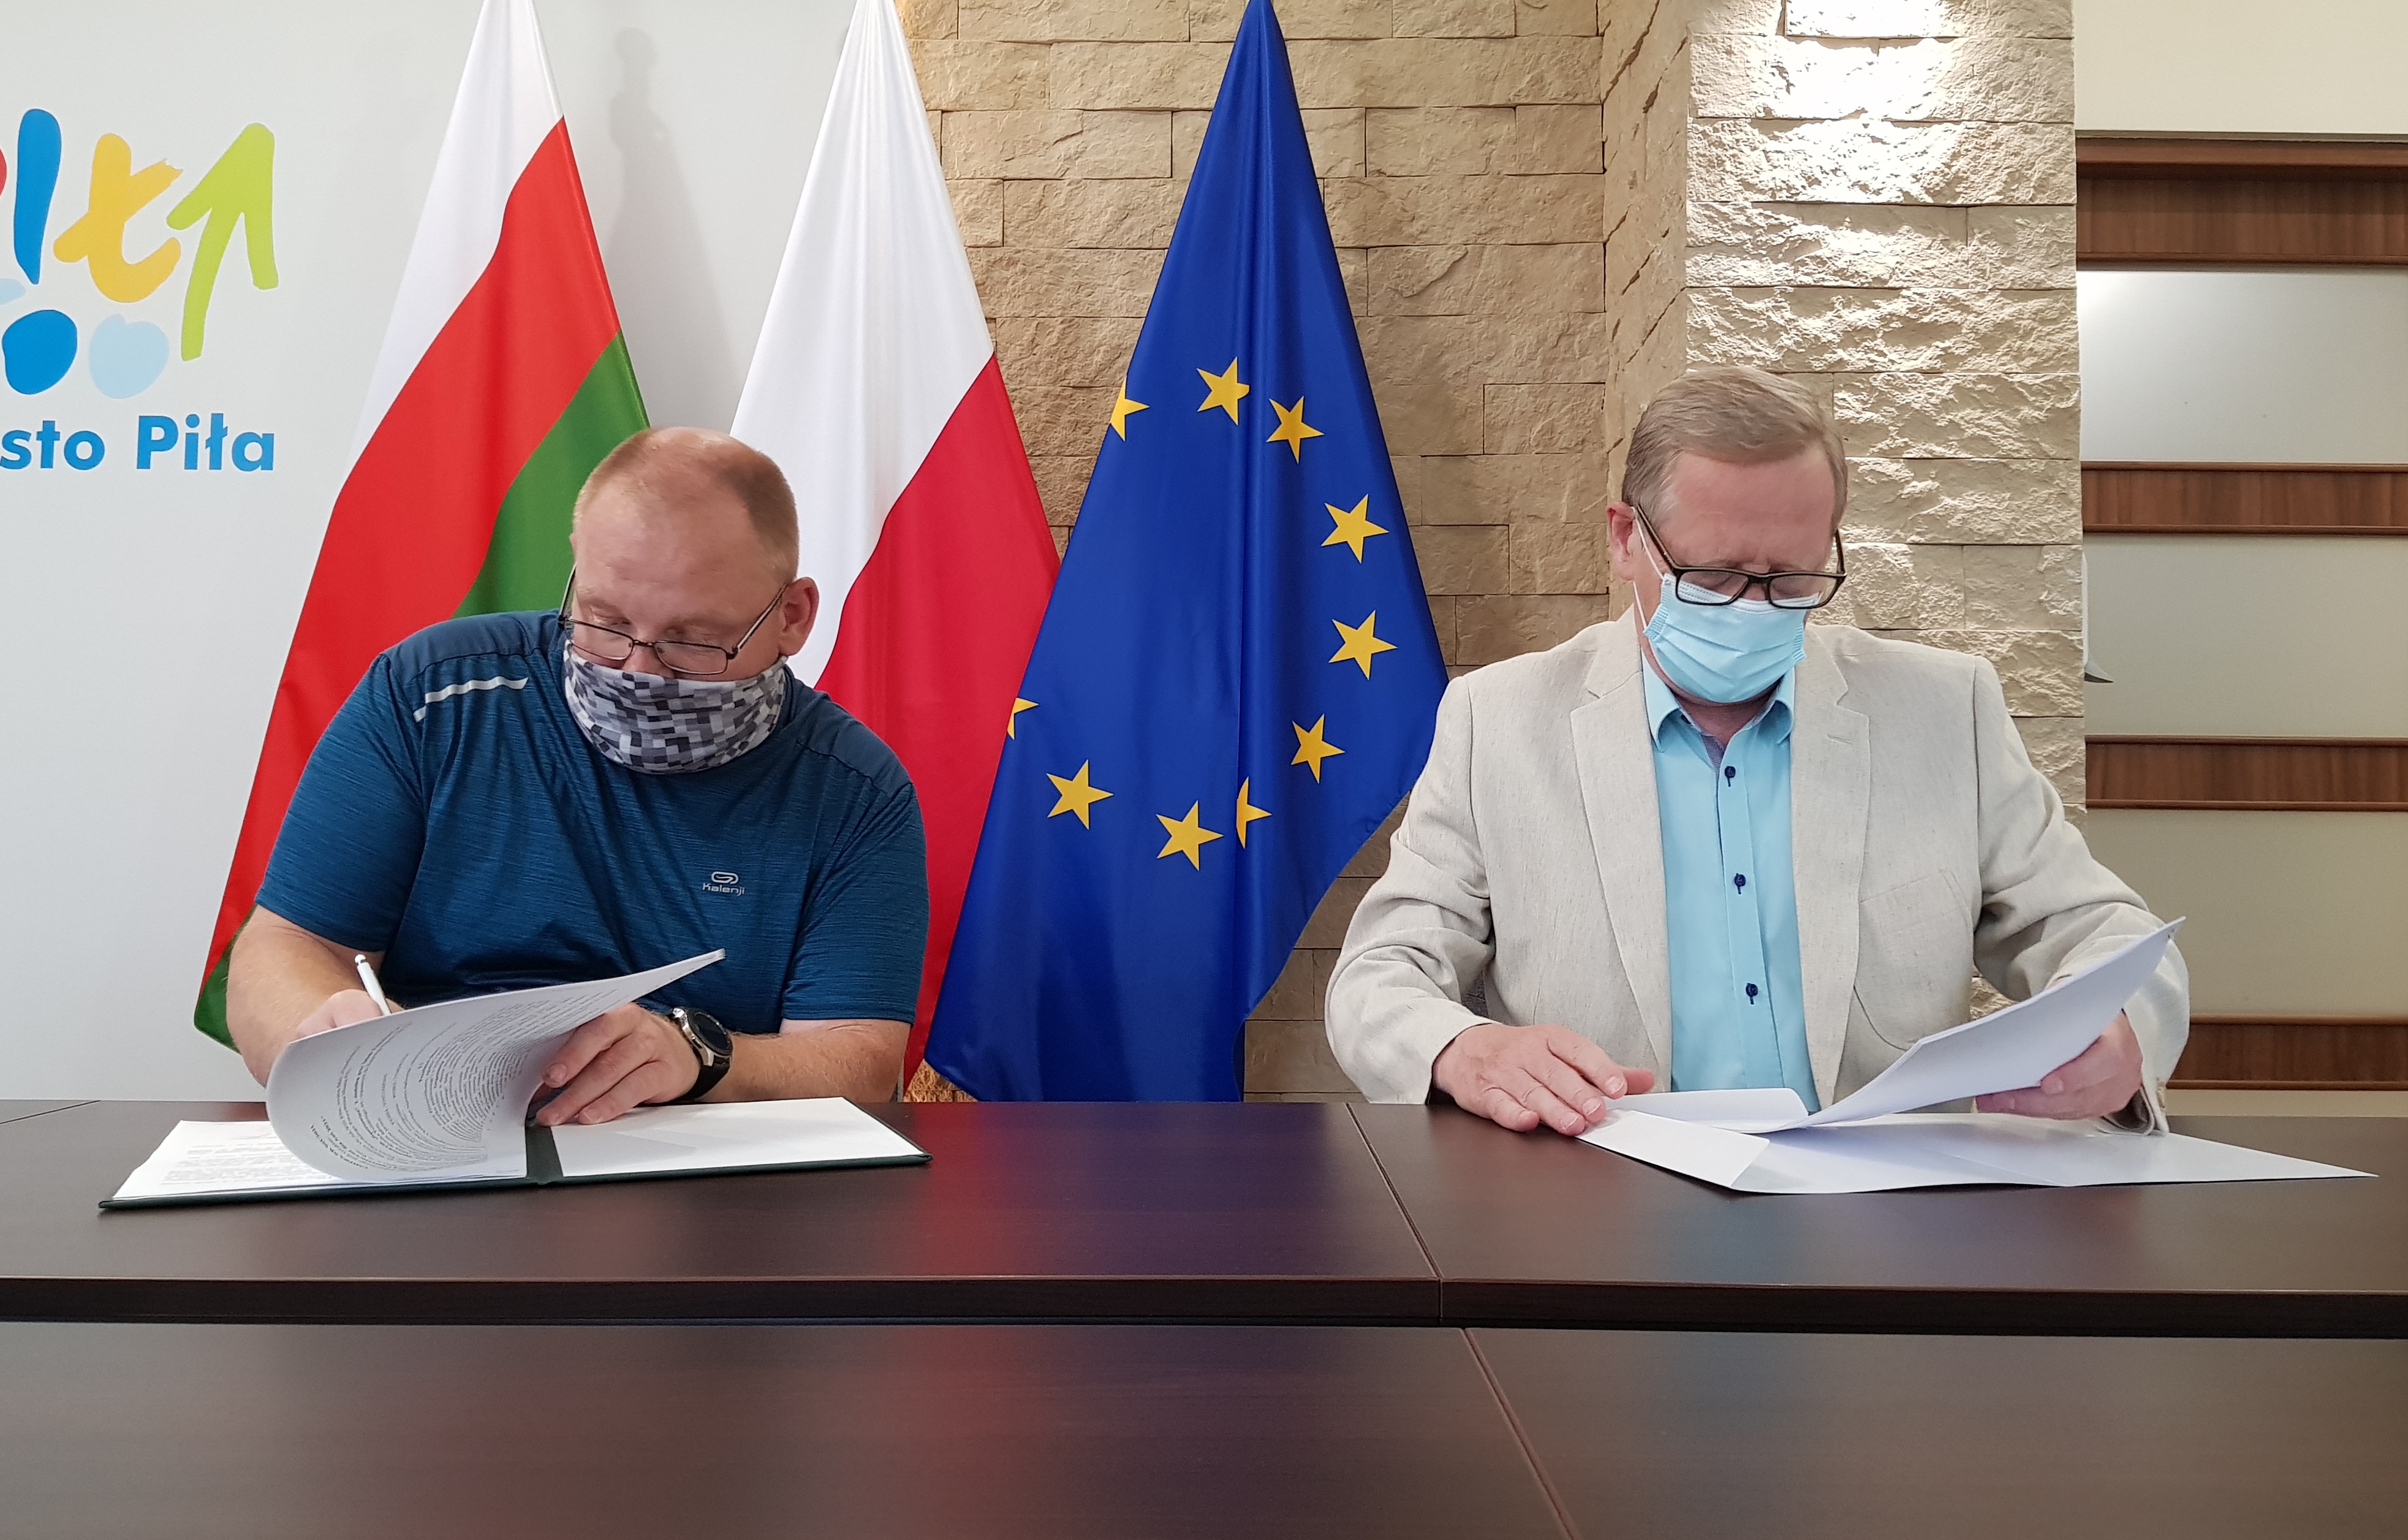 Dwóch mężczyzn siedzi przy stole, podpisują dokumenty. Znajdują się w pomieszczeniu, w tle stoją 3 flagi - miasta Piły, Polska i Unii Europejskiej. 